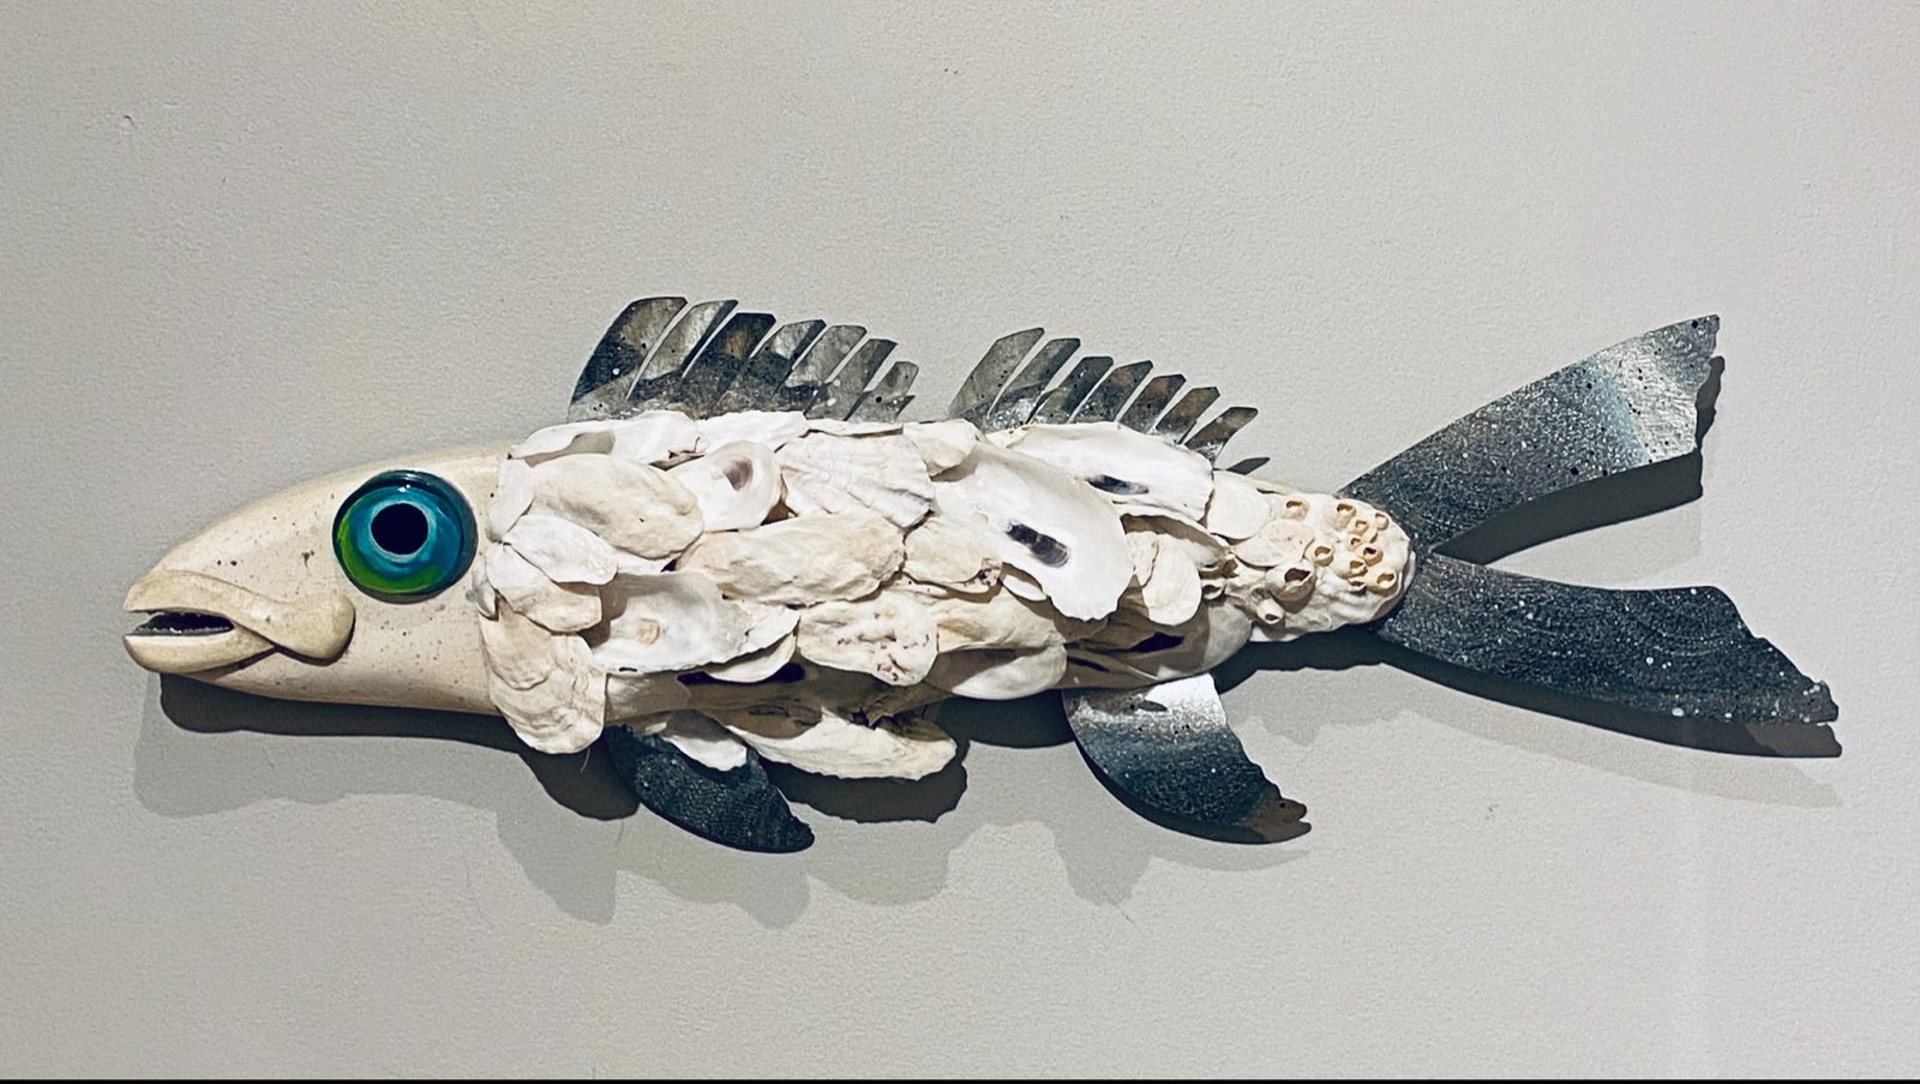 JW23-102 "Rockefeller" Oyster Fish by Jo Watson